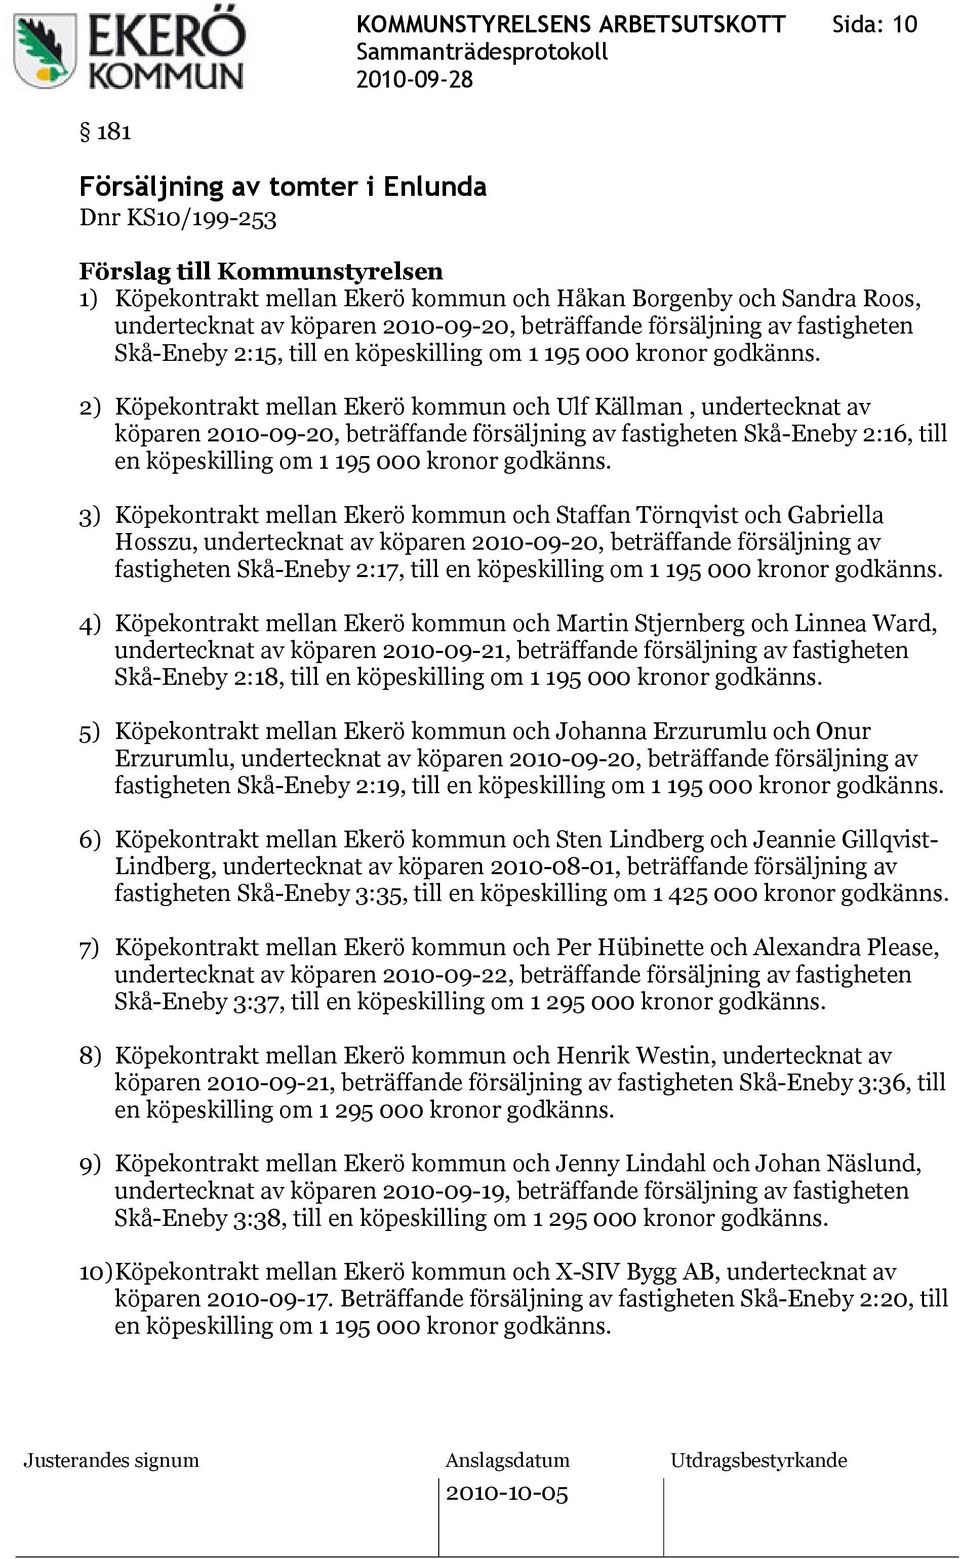 2) Köpekontrakt mellan Ekerö kommun och Ulf Källman, undertecknat av köparen 2010-09-20, beträffande försäljning av fastigheten Skå-Eneby 2:16, till en köpeskilling om 1 195 000 kronor godkänns.